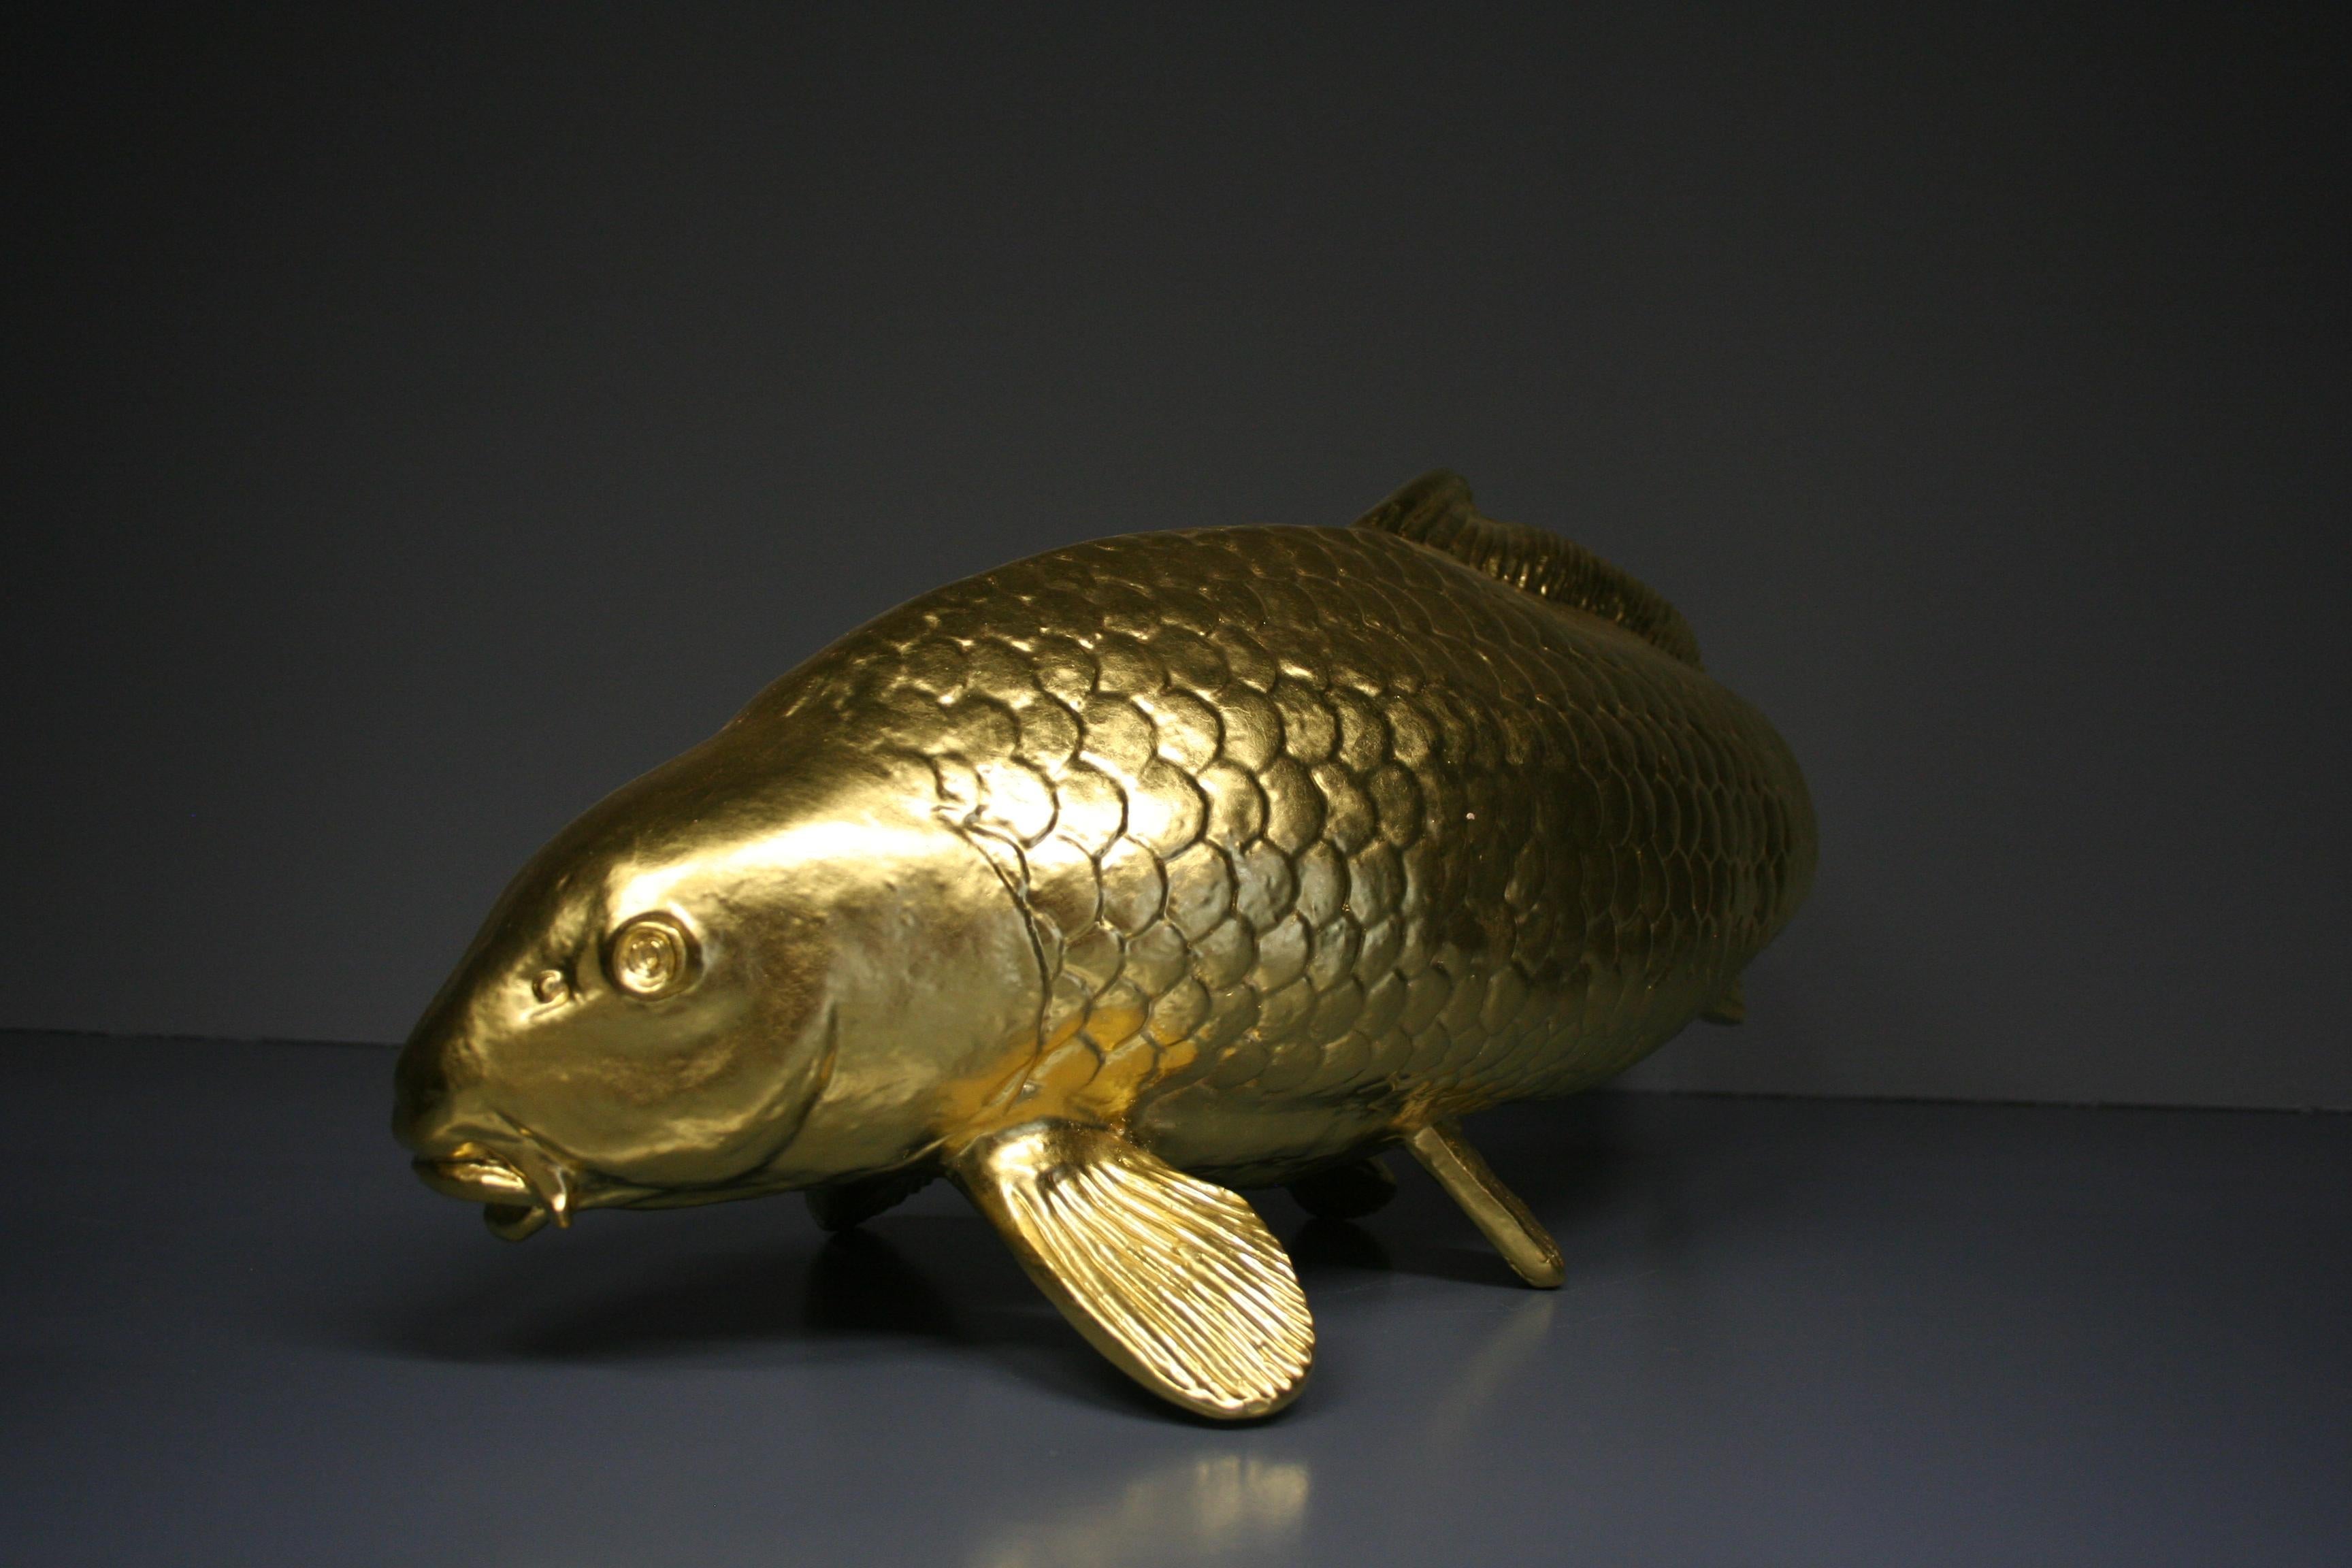 Golden carp 24 Karat gilded - Sculpture by Steven